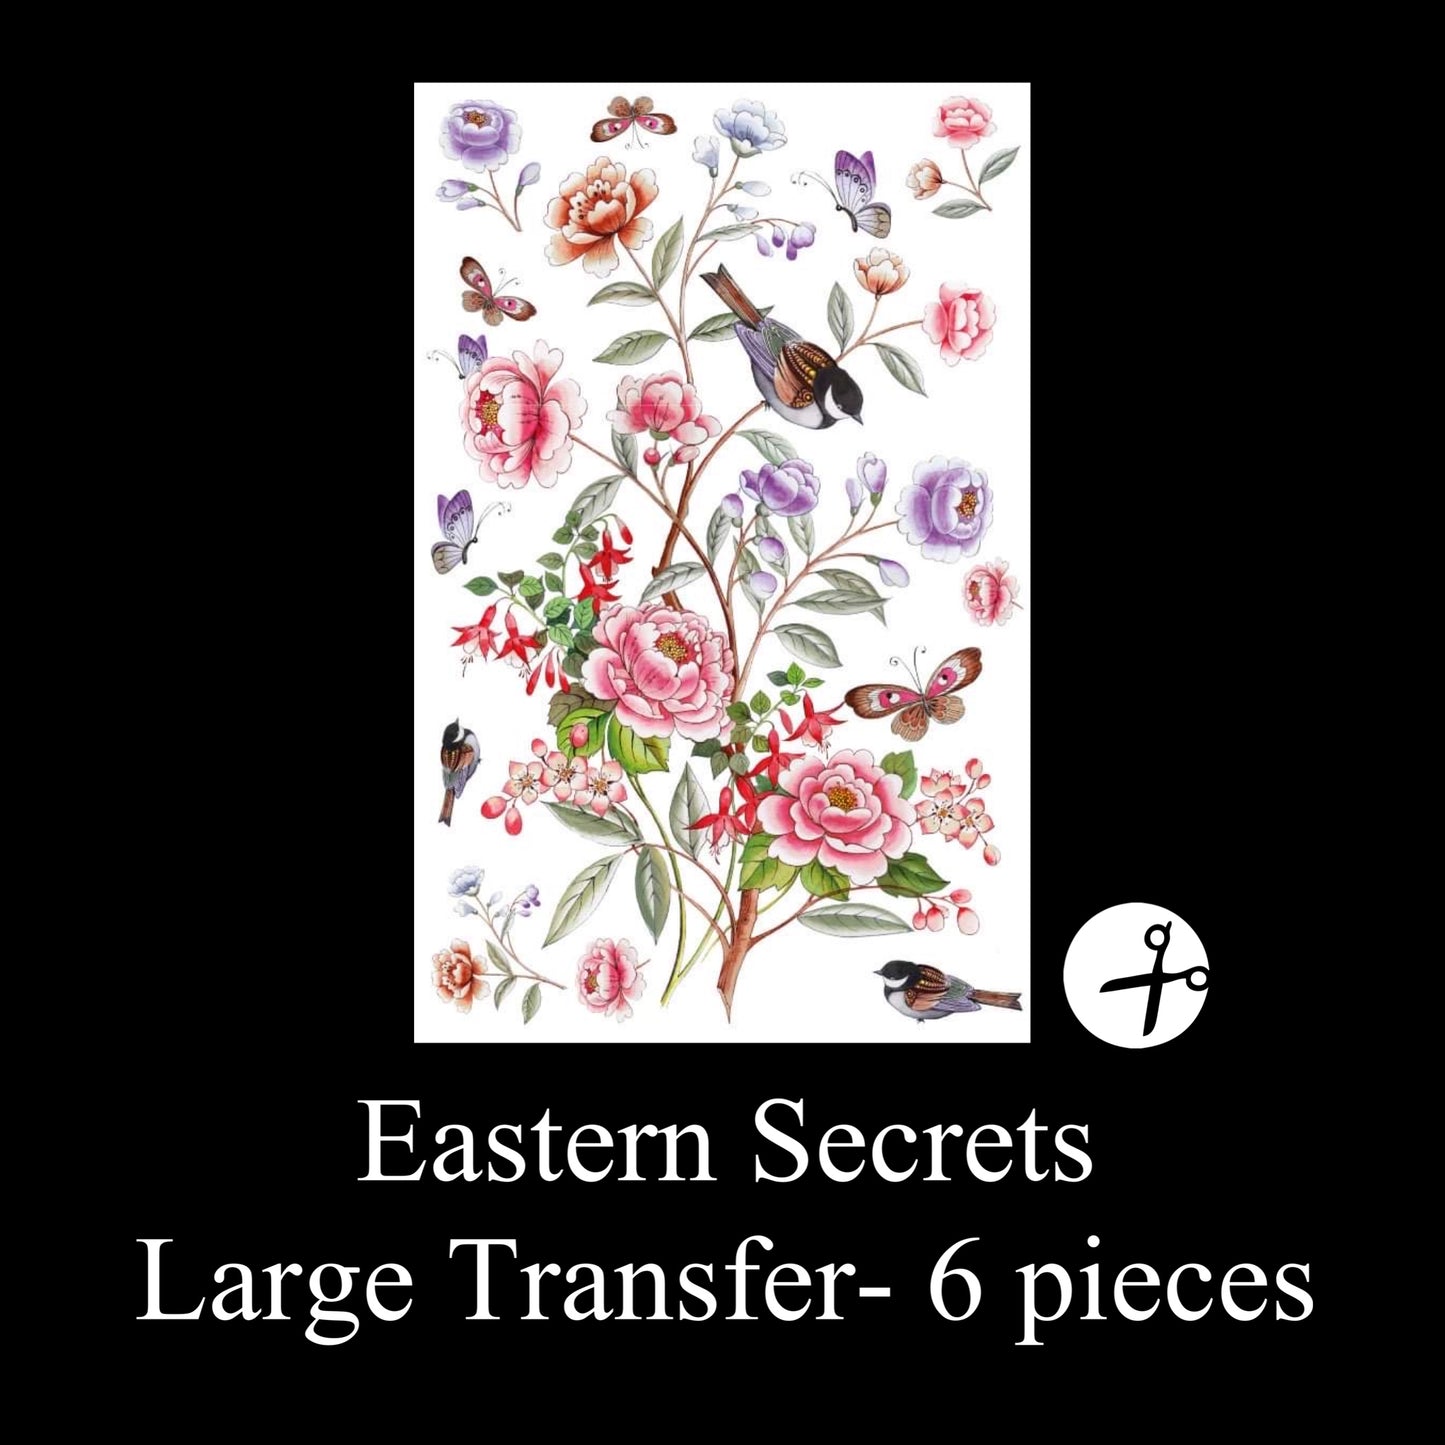 Eastern Secrets